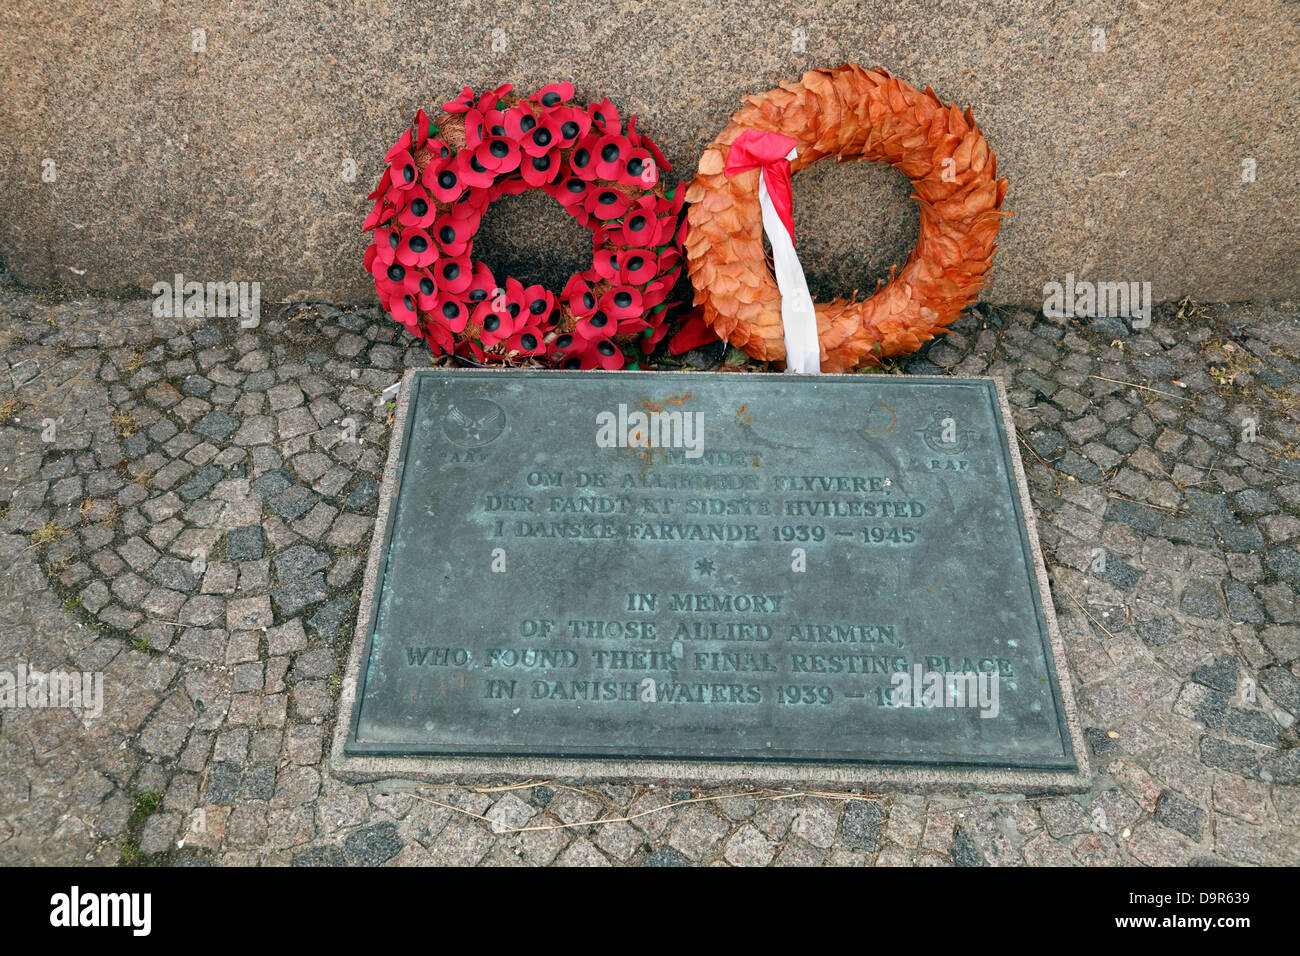 RAF tablet a WW2 memorial a Tuborg Havn in memoria di quelle alleate aviatori, che hanno trovato il loro ultimo luogo di riposo nelle acque danesi Foto Stock